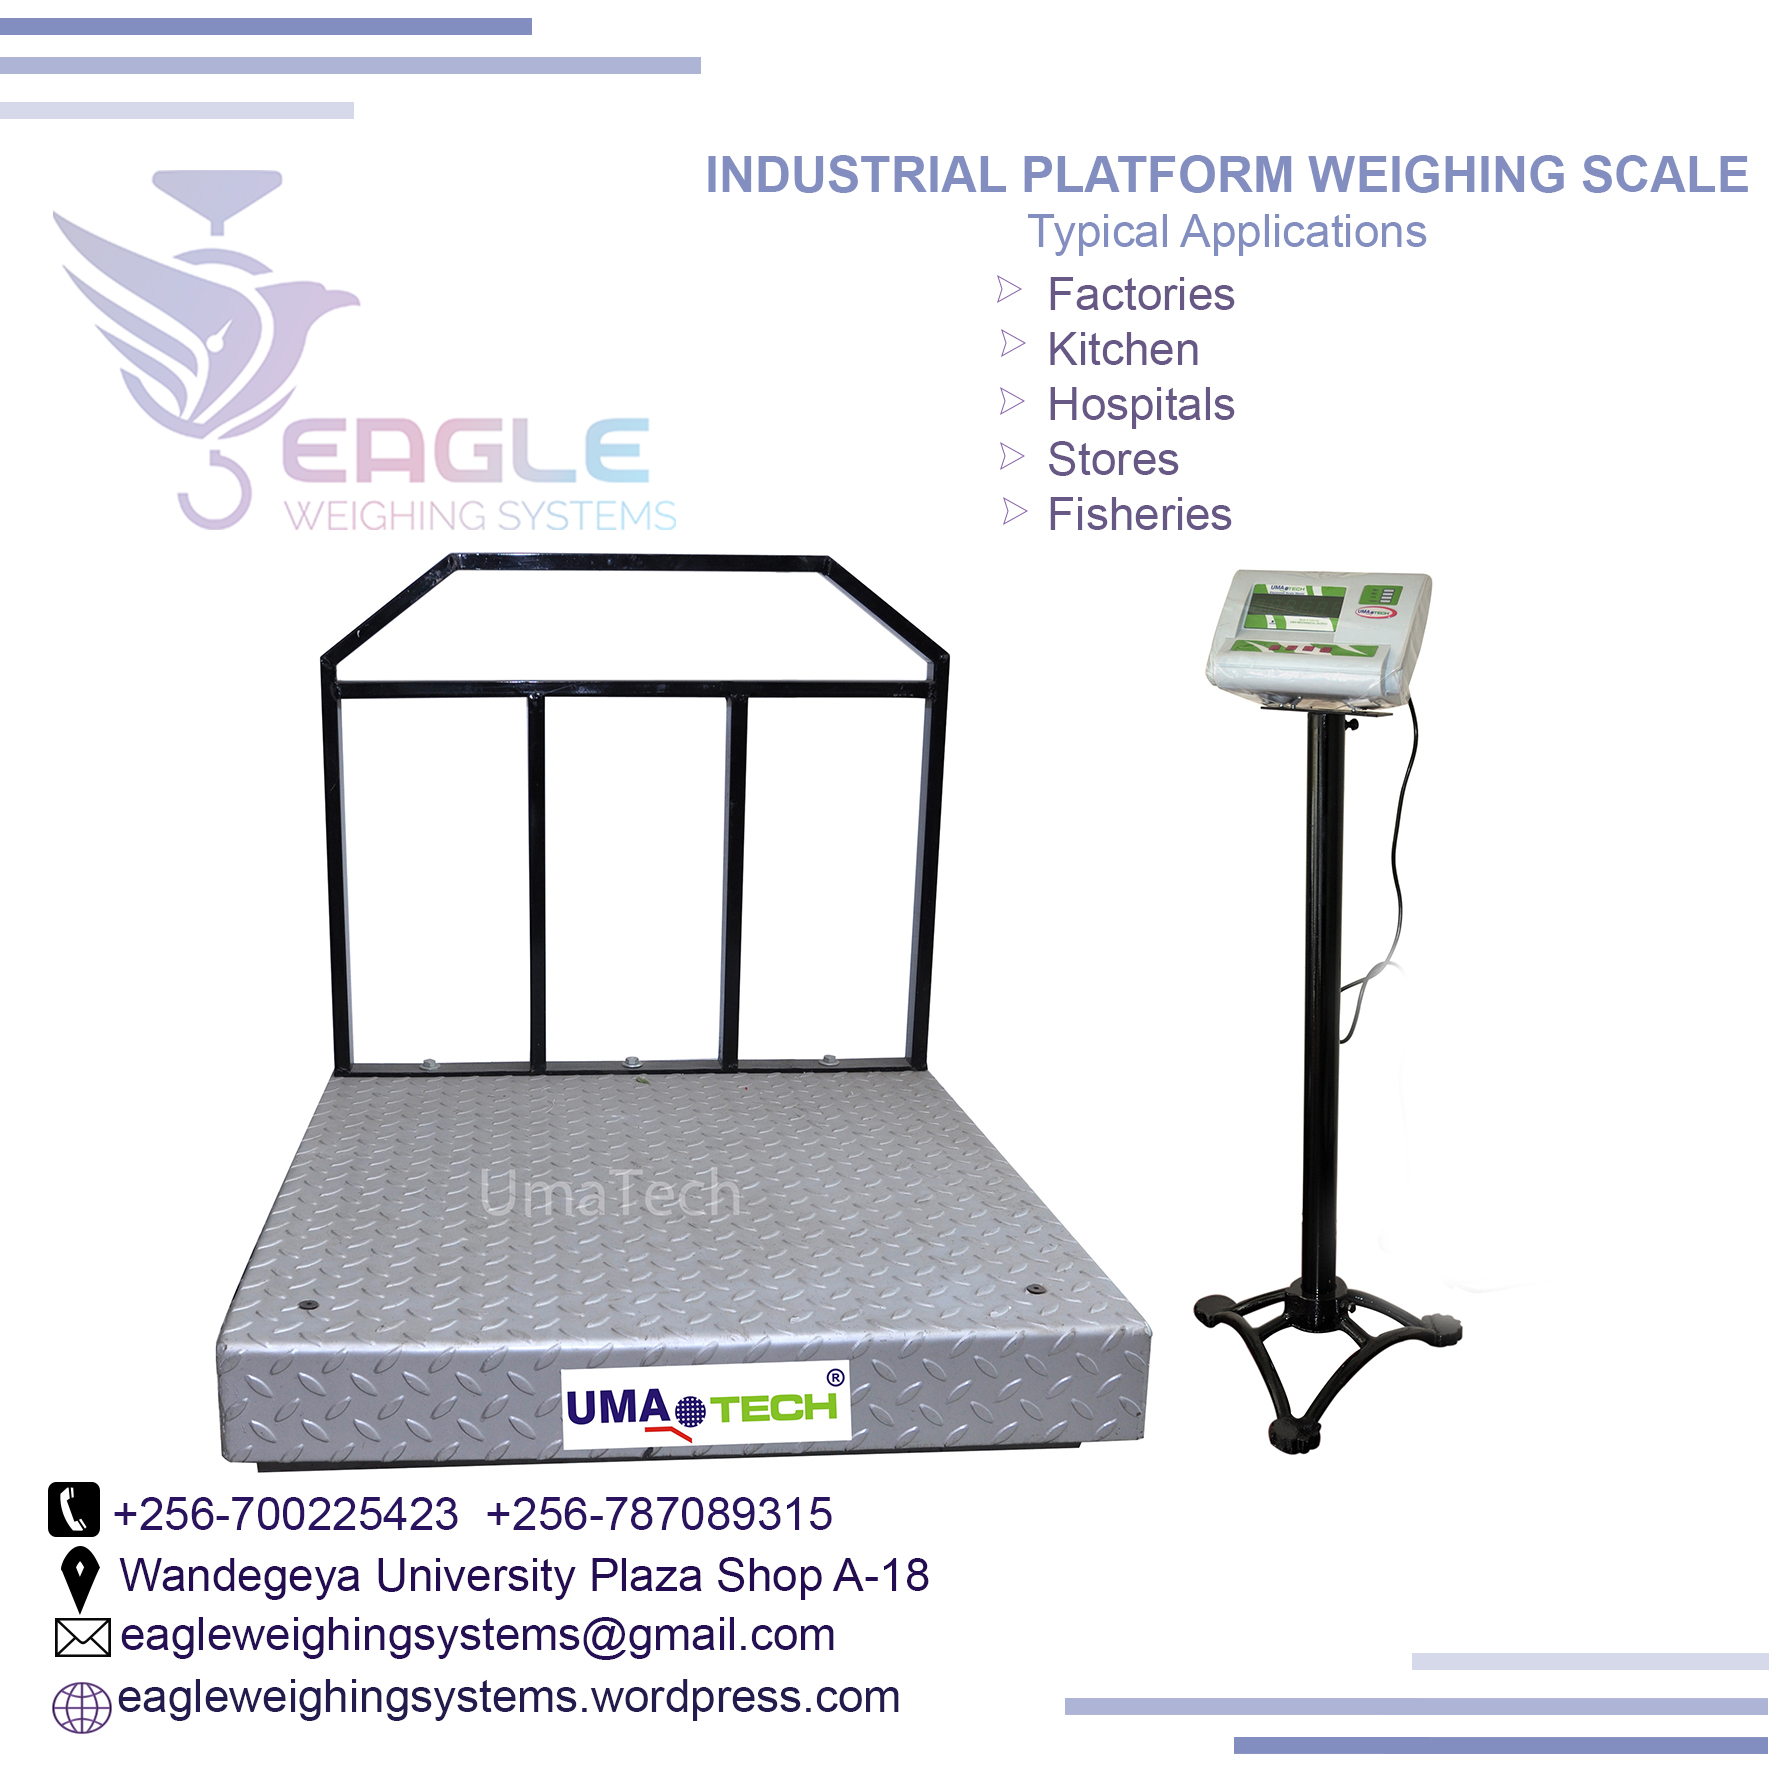 New model electronic digital platform scales, Kampala Central Division, Central, Uganda